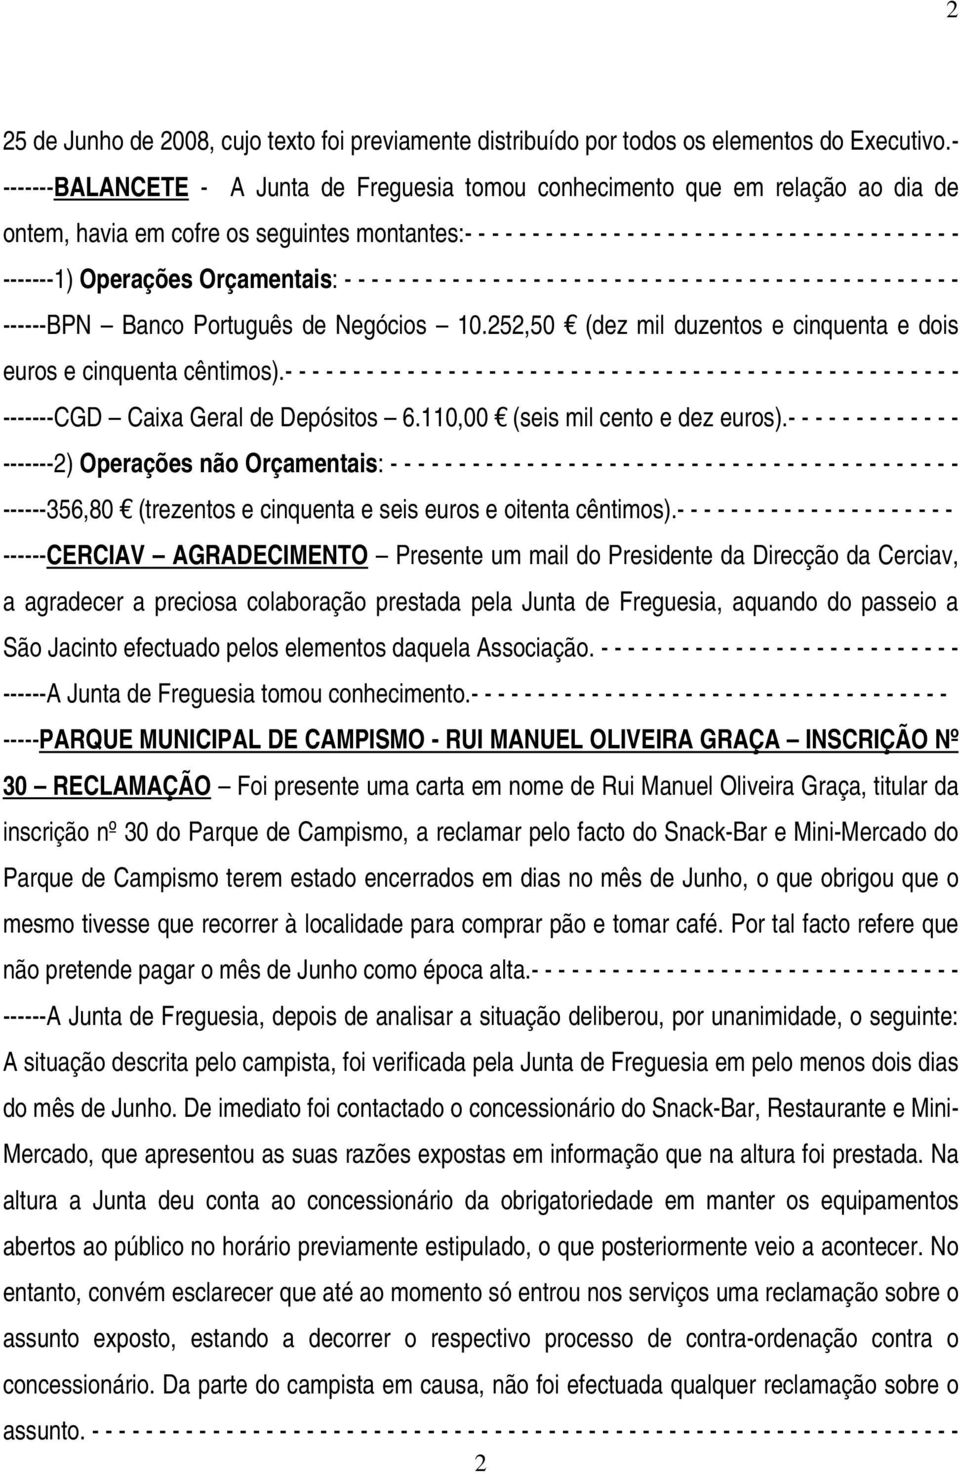 - - - -------1) Operações Orçamentais: - - - - - - - - - - - - - - - - - - - - - - - - - - - - - - - - - - - - - - - - - - - - - - ------BPN Banco Português de Negócios 10.